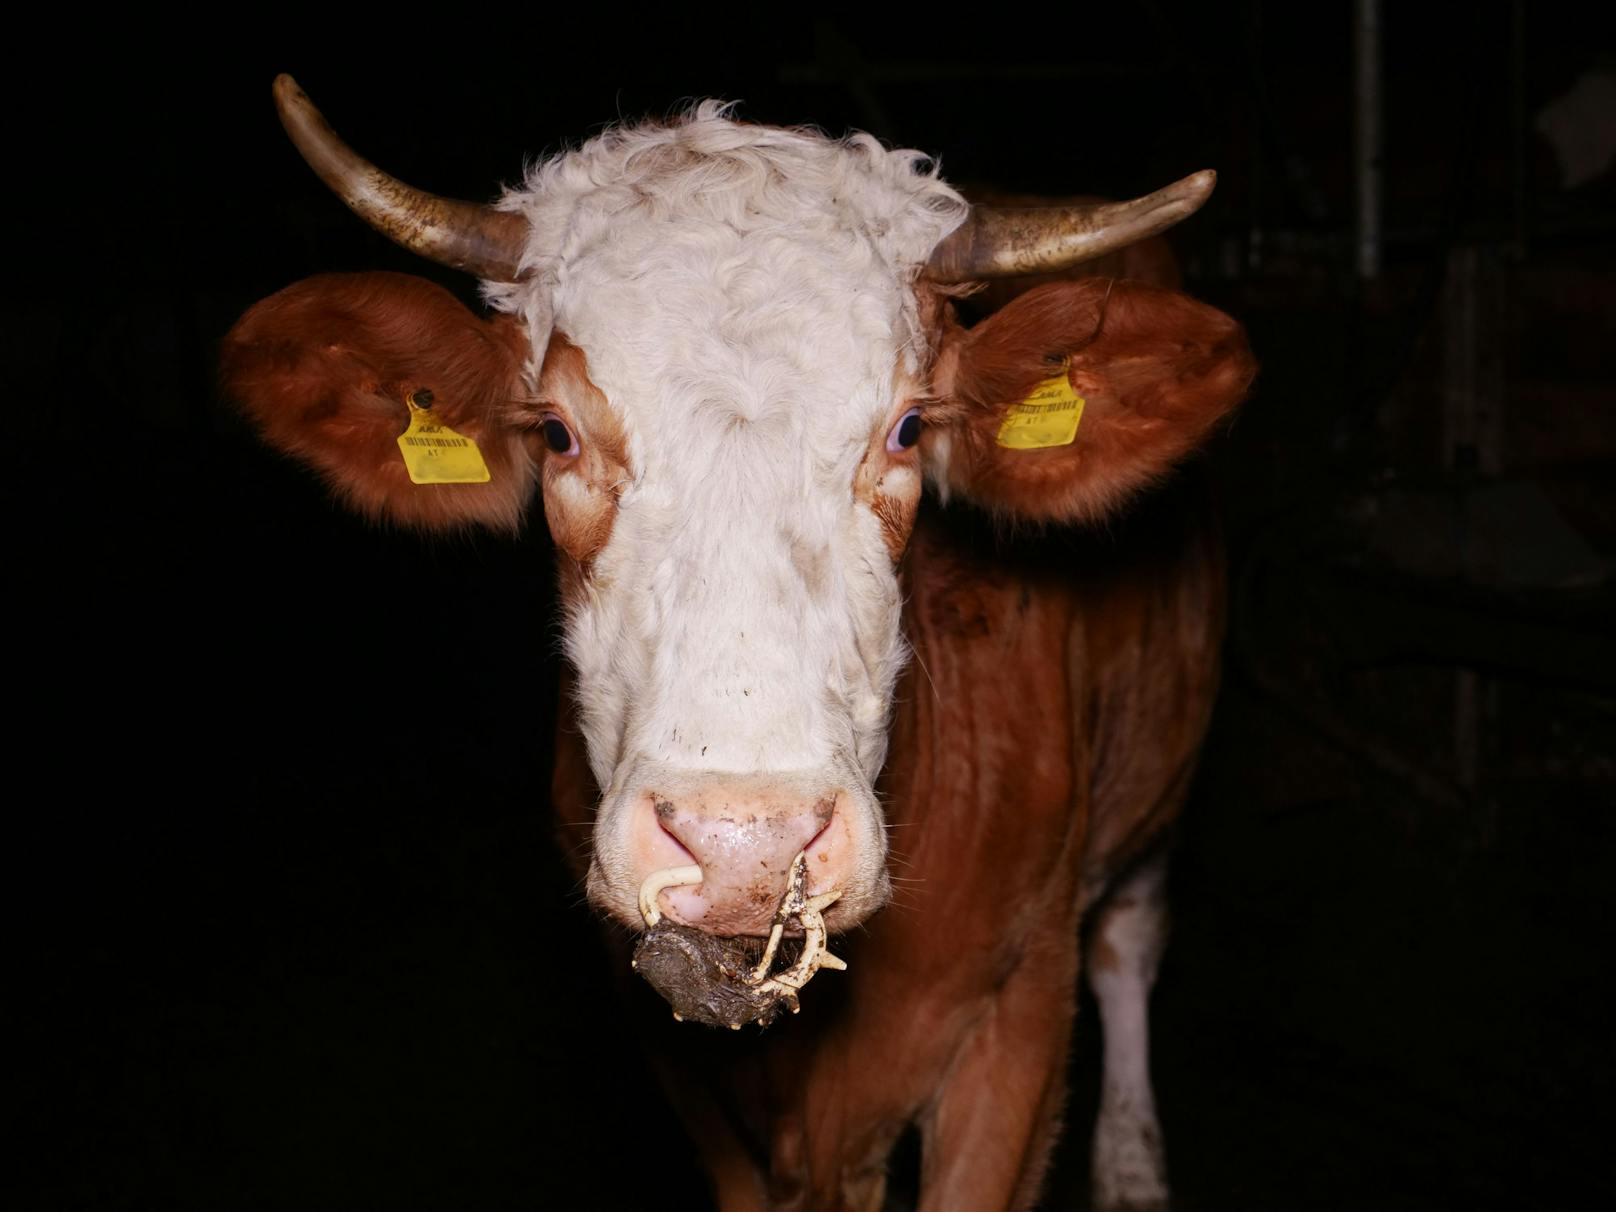 Dreckig, verletzt und spärlich umsorgt - das Leben einer Kuh in Österreich? 